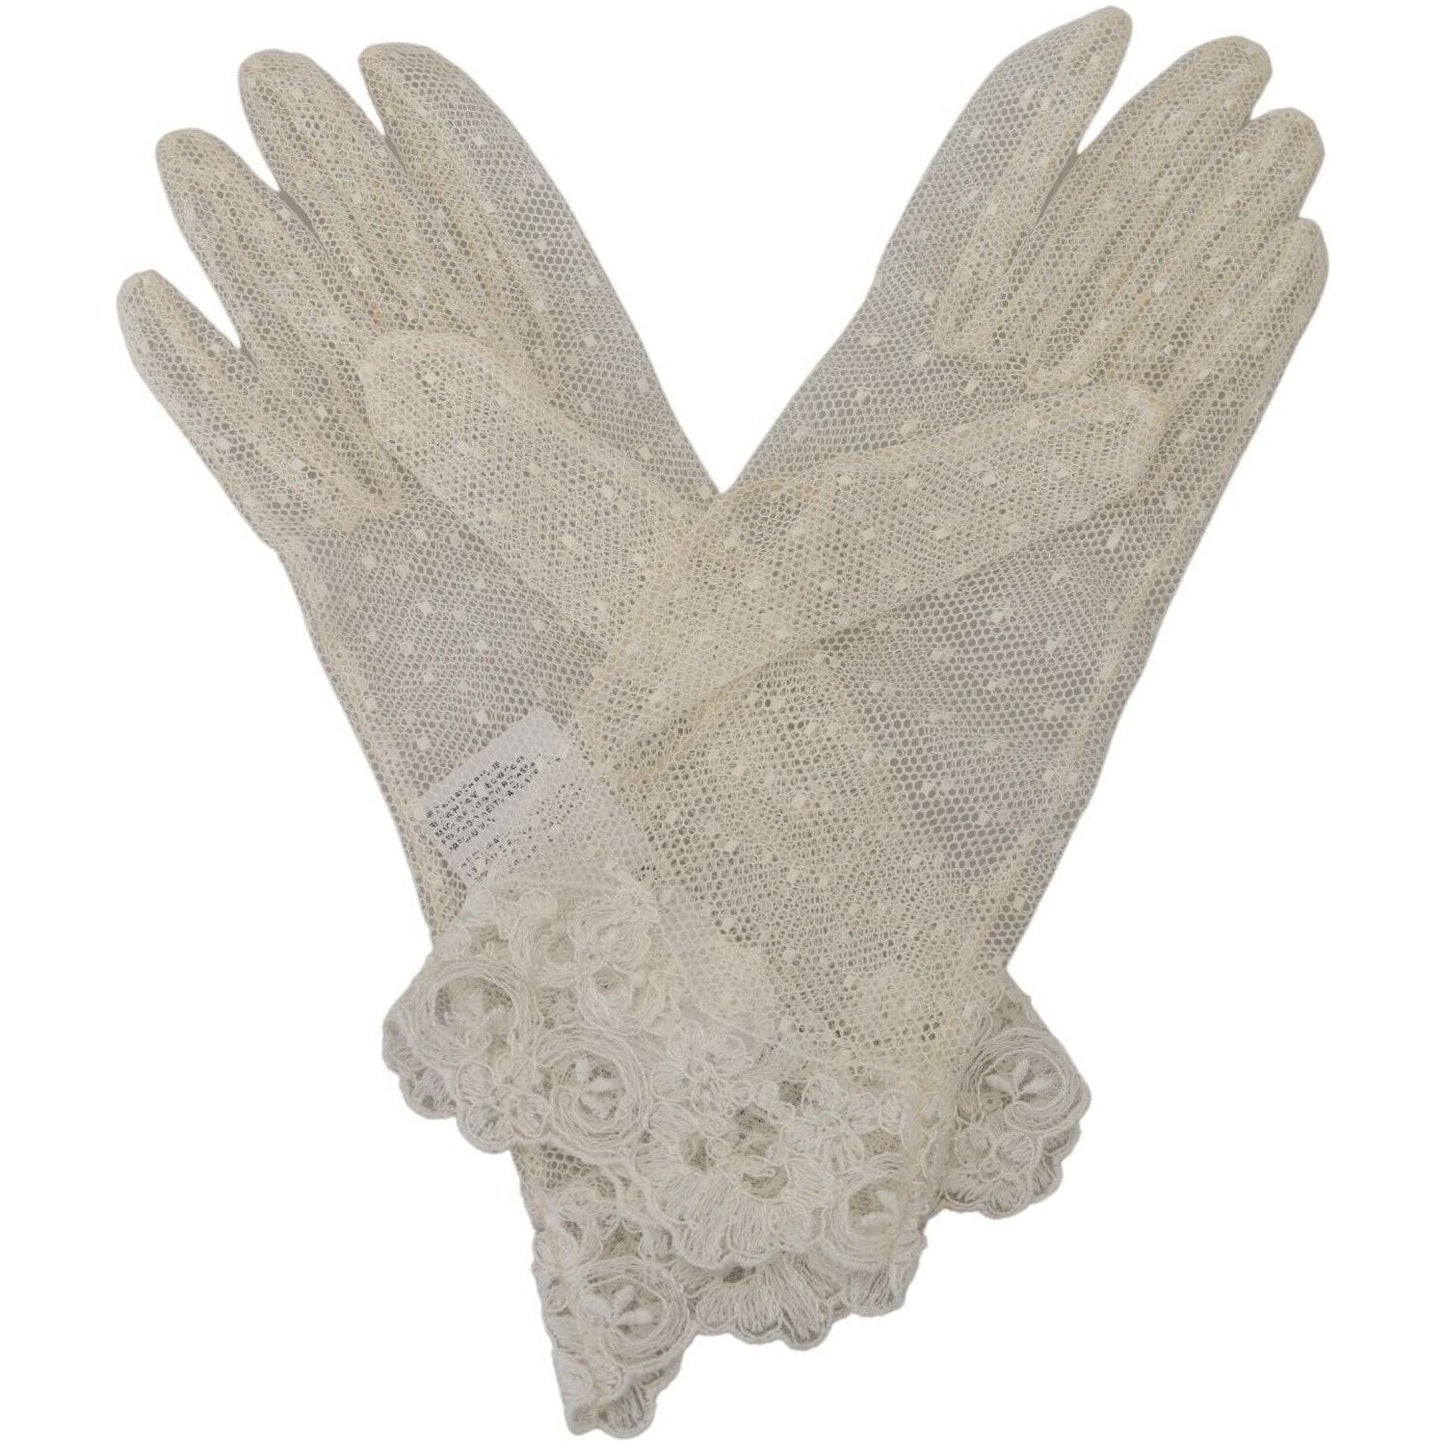 Dolce & Gabbana Chic White Wrist Length Gloves white-lace-wrist-length-mitten-cotton-gloves s-l1600-49-2-cd5efa88-5f1.jpg